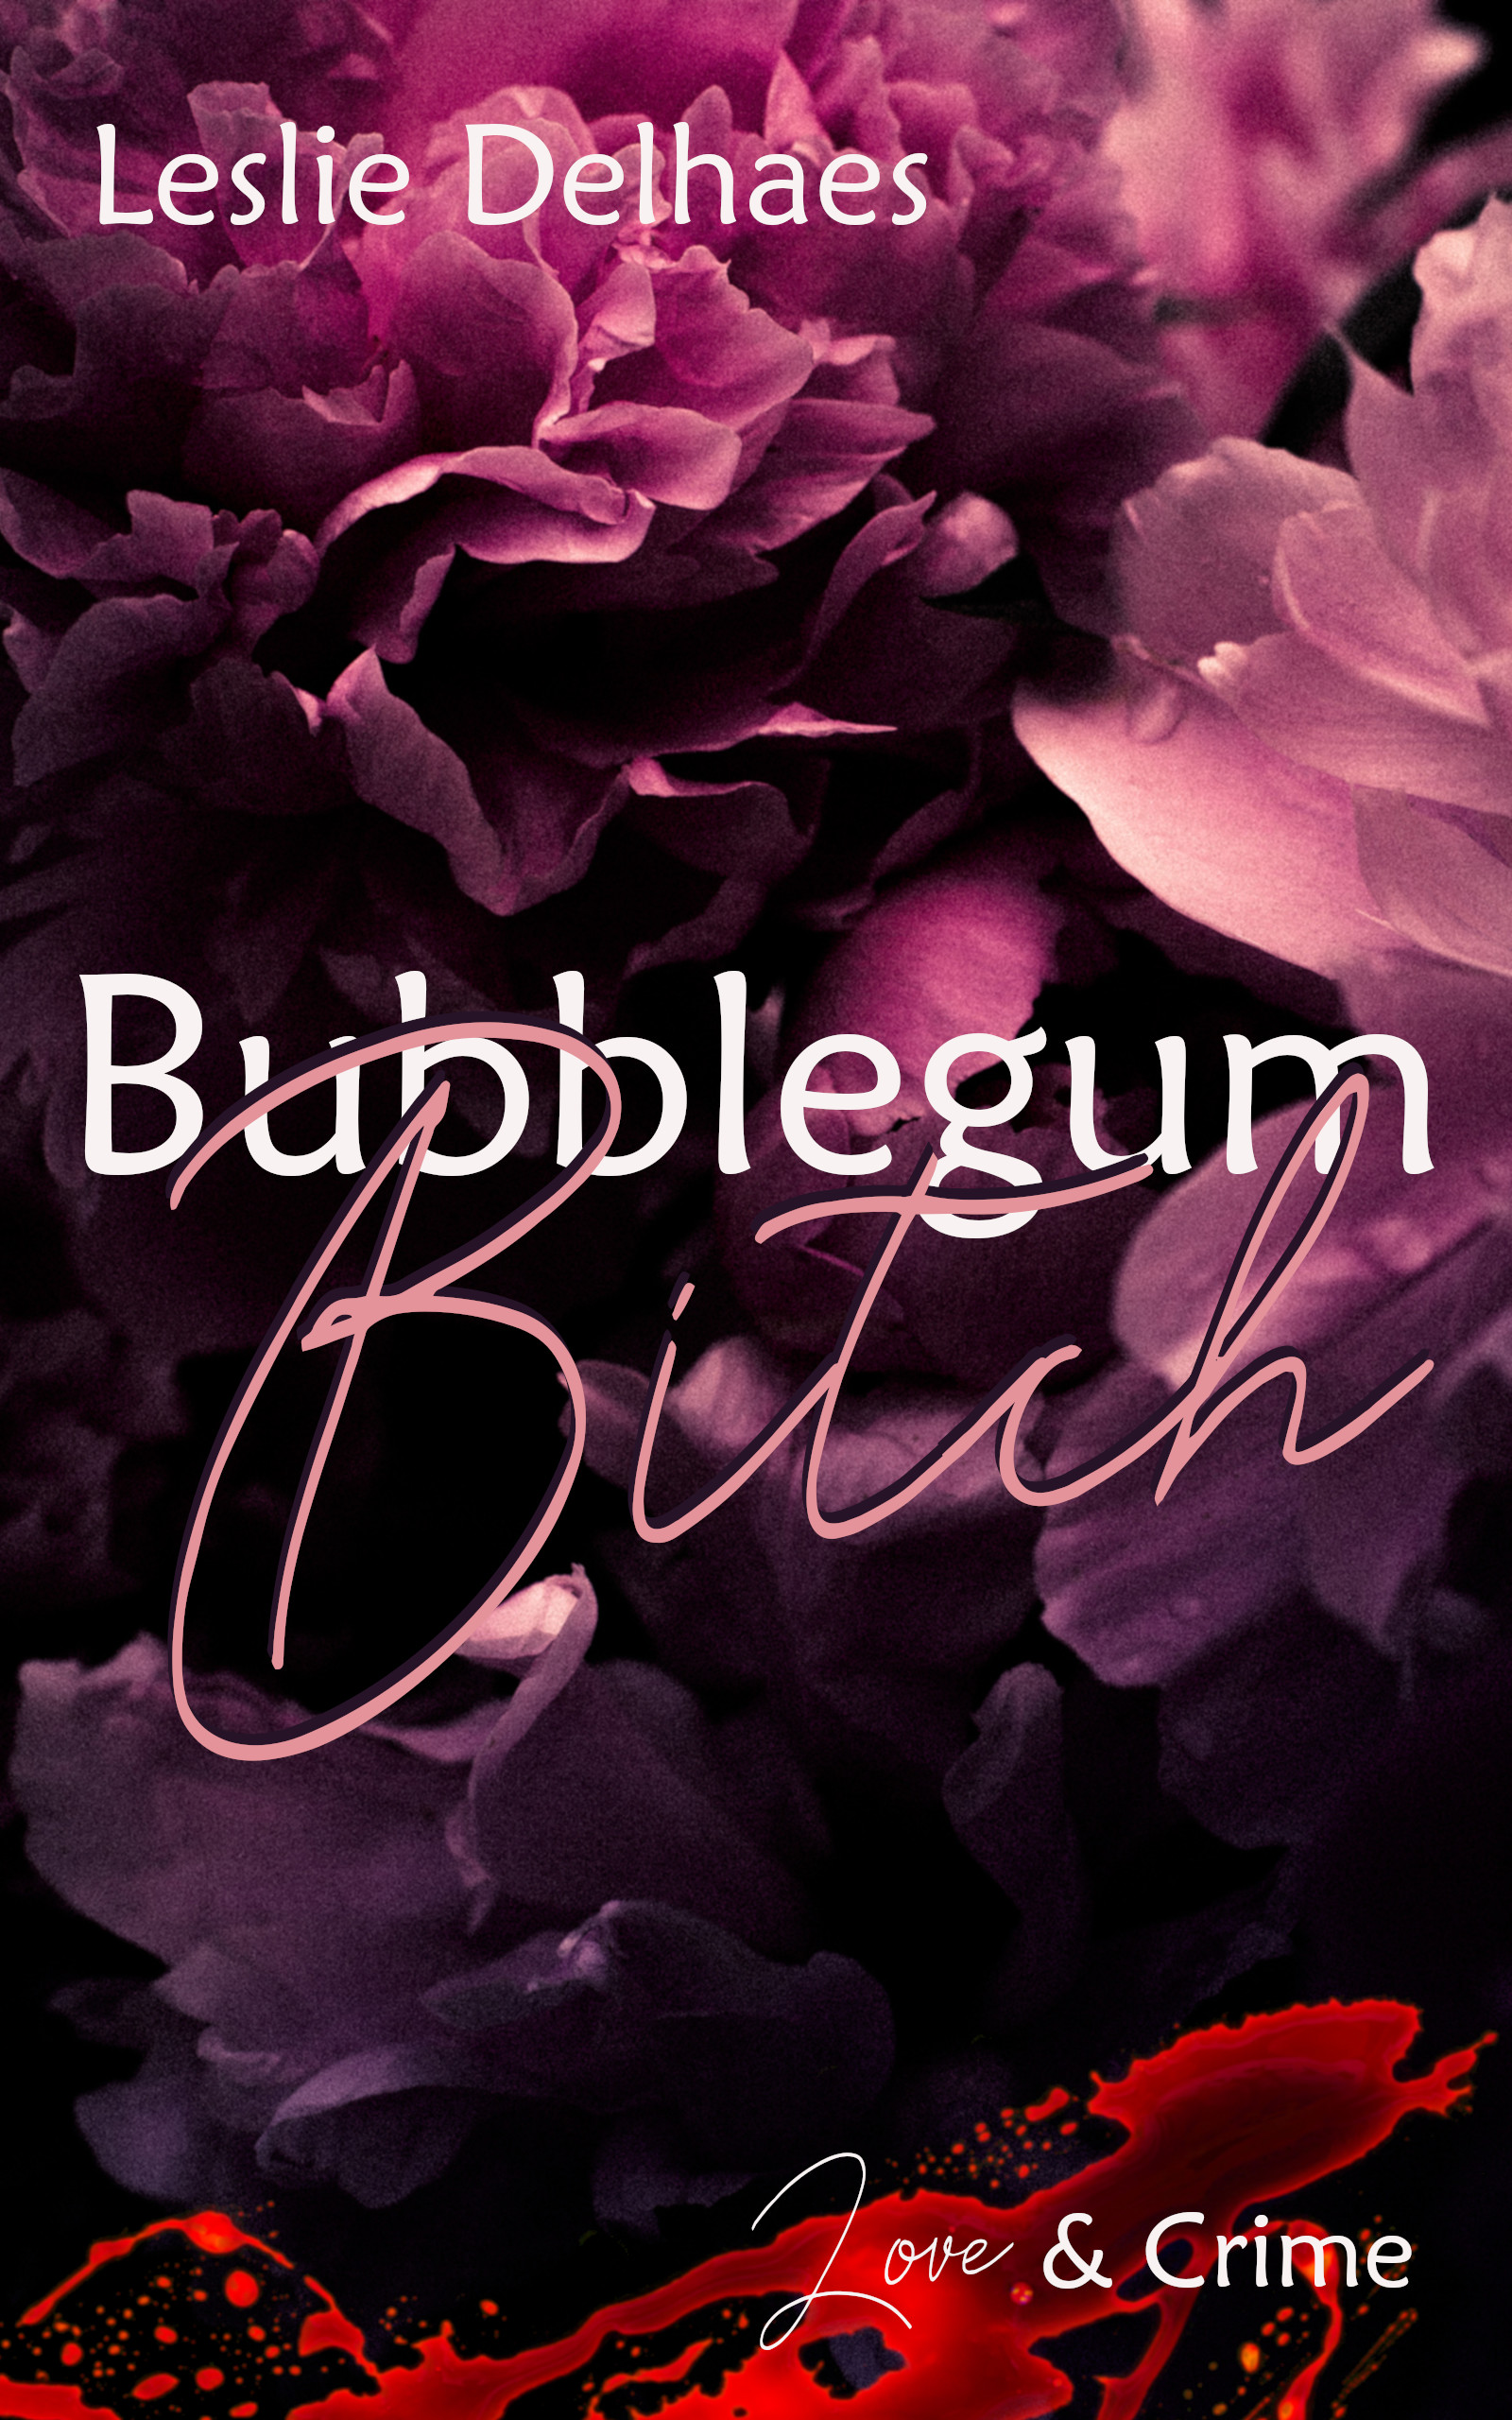 Bubblegum Bitch